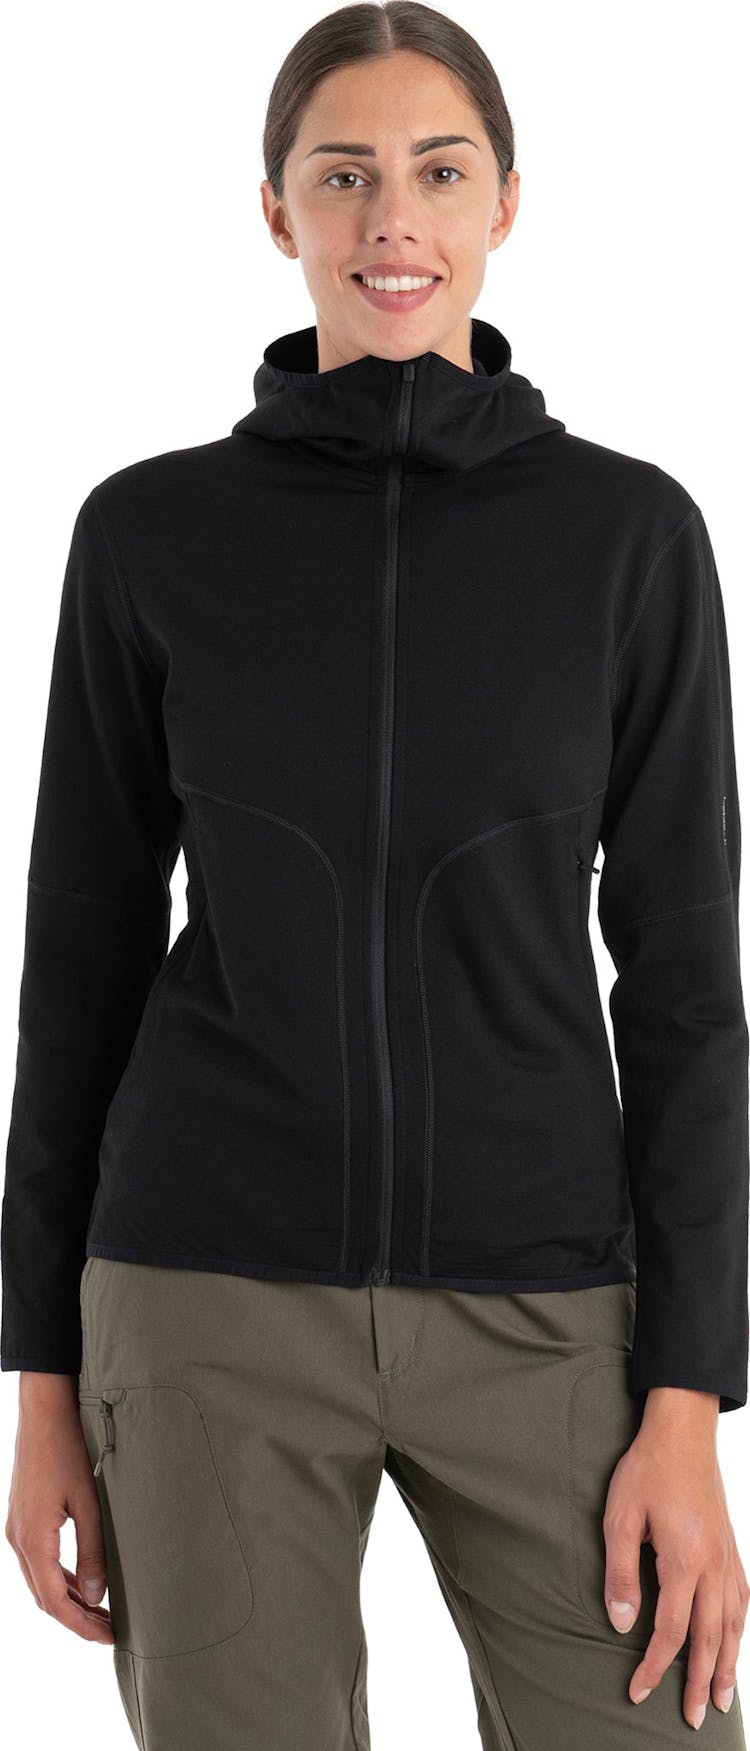 Product gallery image number 4 for product 560 REALFLEECE Elemental II Merino Long Sleeve Zip Hoody - Women's